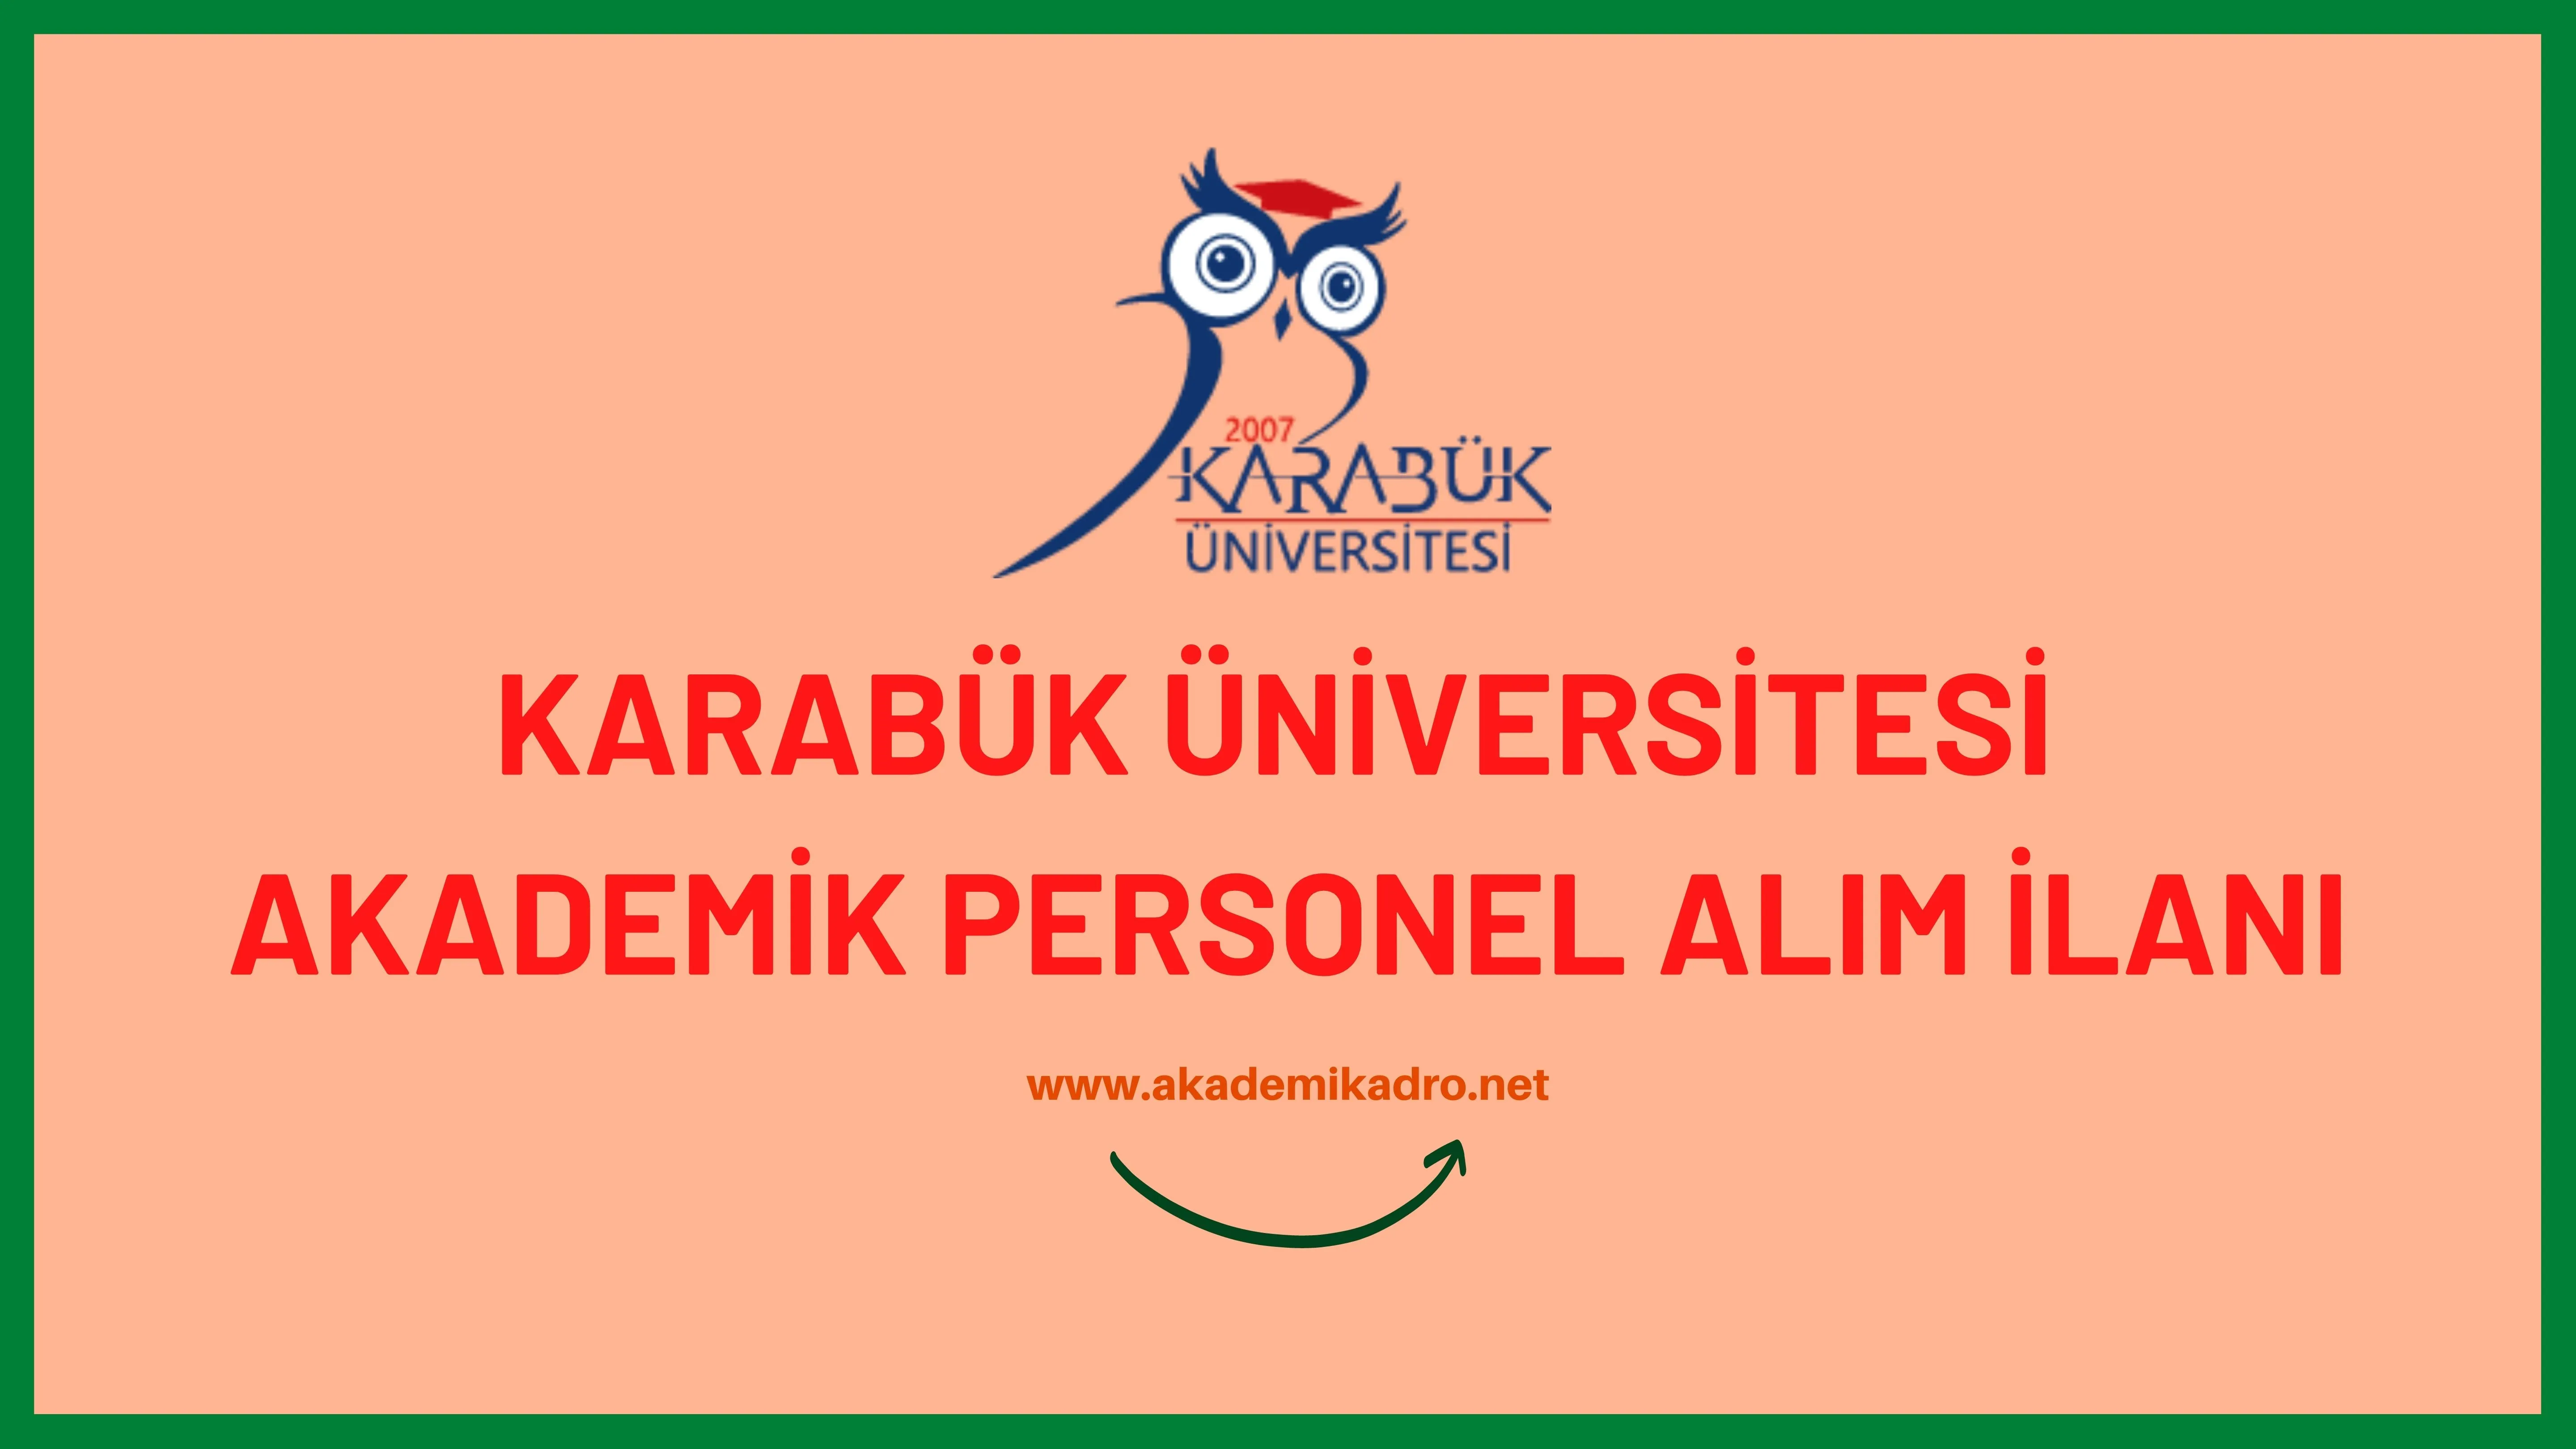 Karabük Üniversitesi birçok alandan 31 Akademik personel alacak. Son başvuru tarihi 29 Aralık 2022.